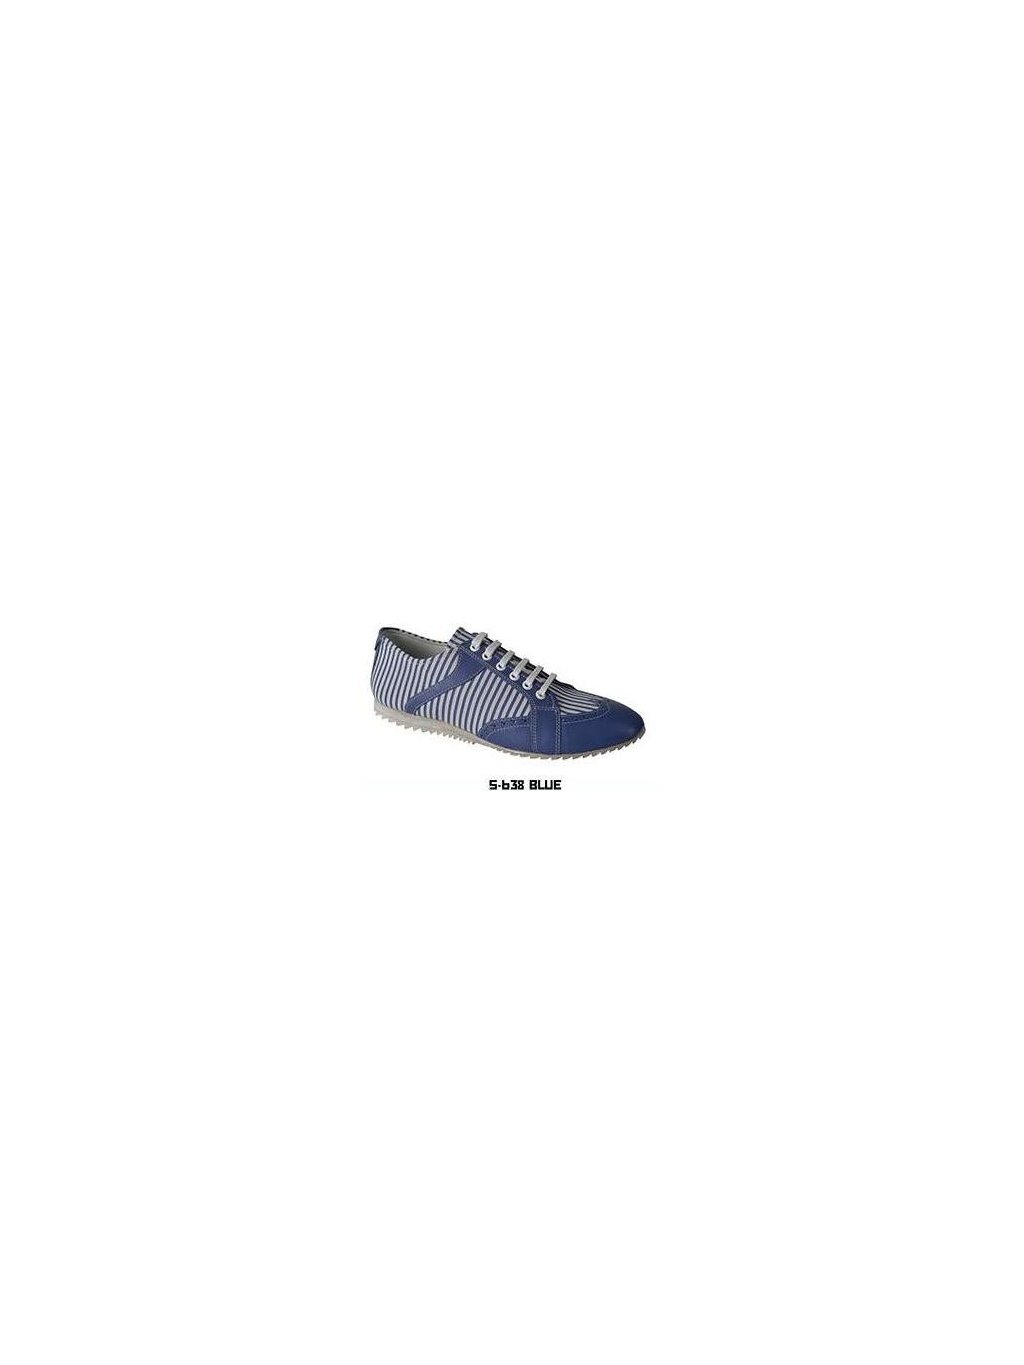 Pánske topánky CIPO & BAXX 638 BLUE (Veľkosť obuvi 44)